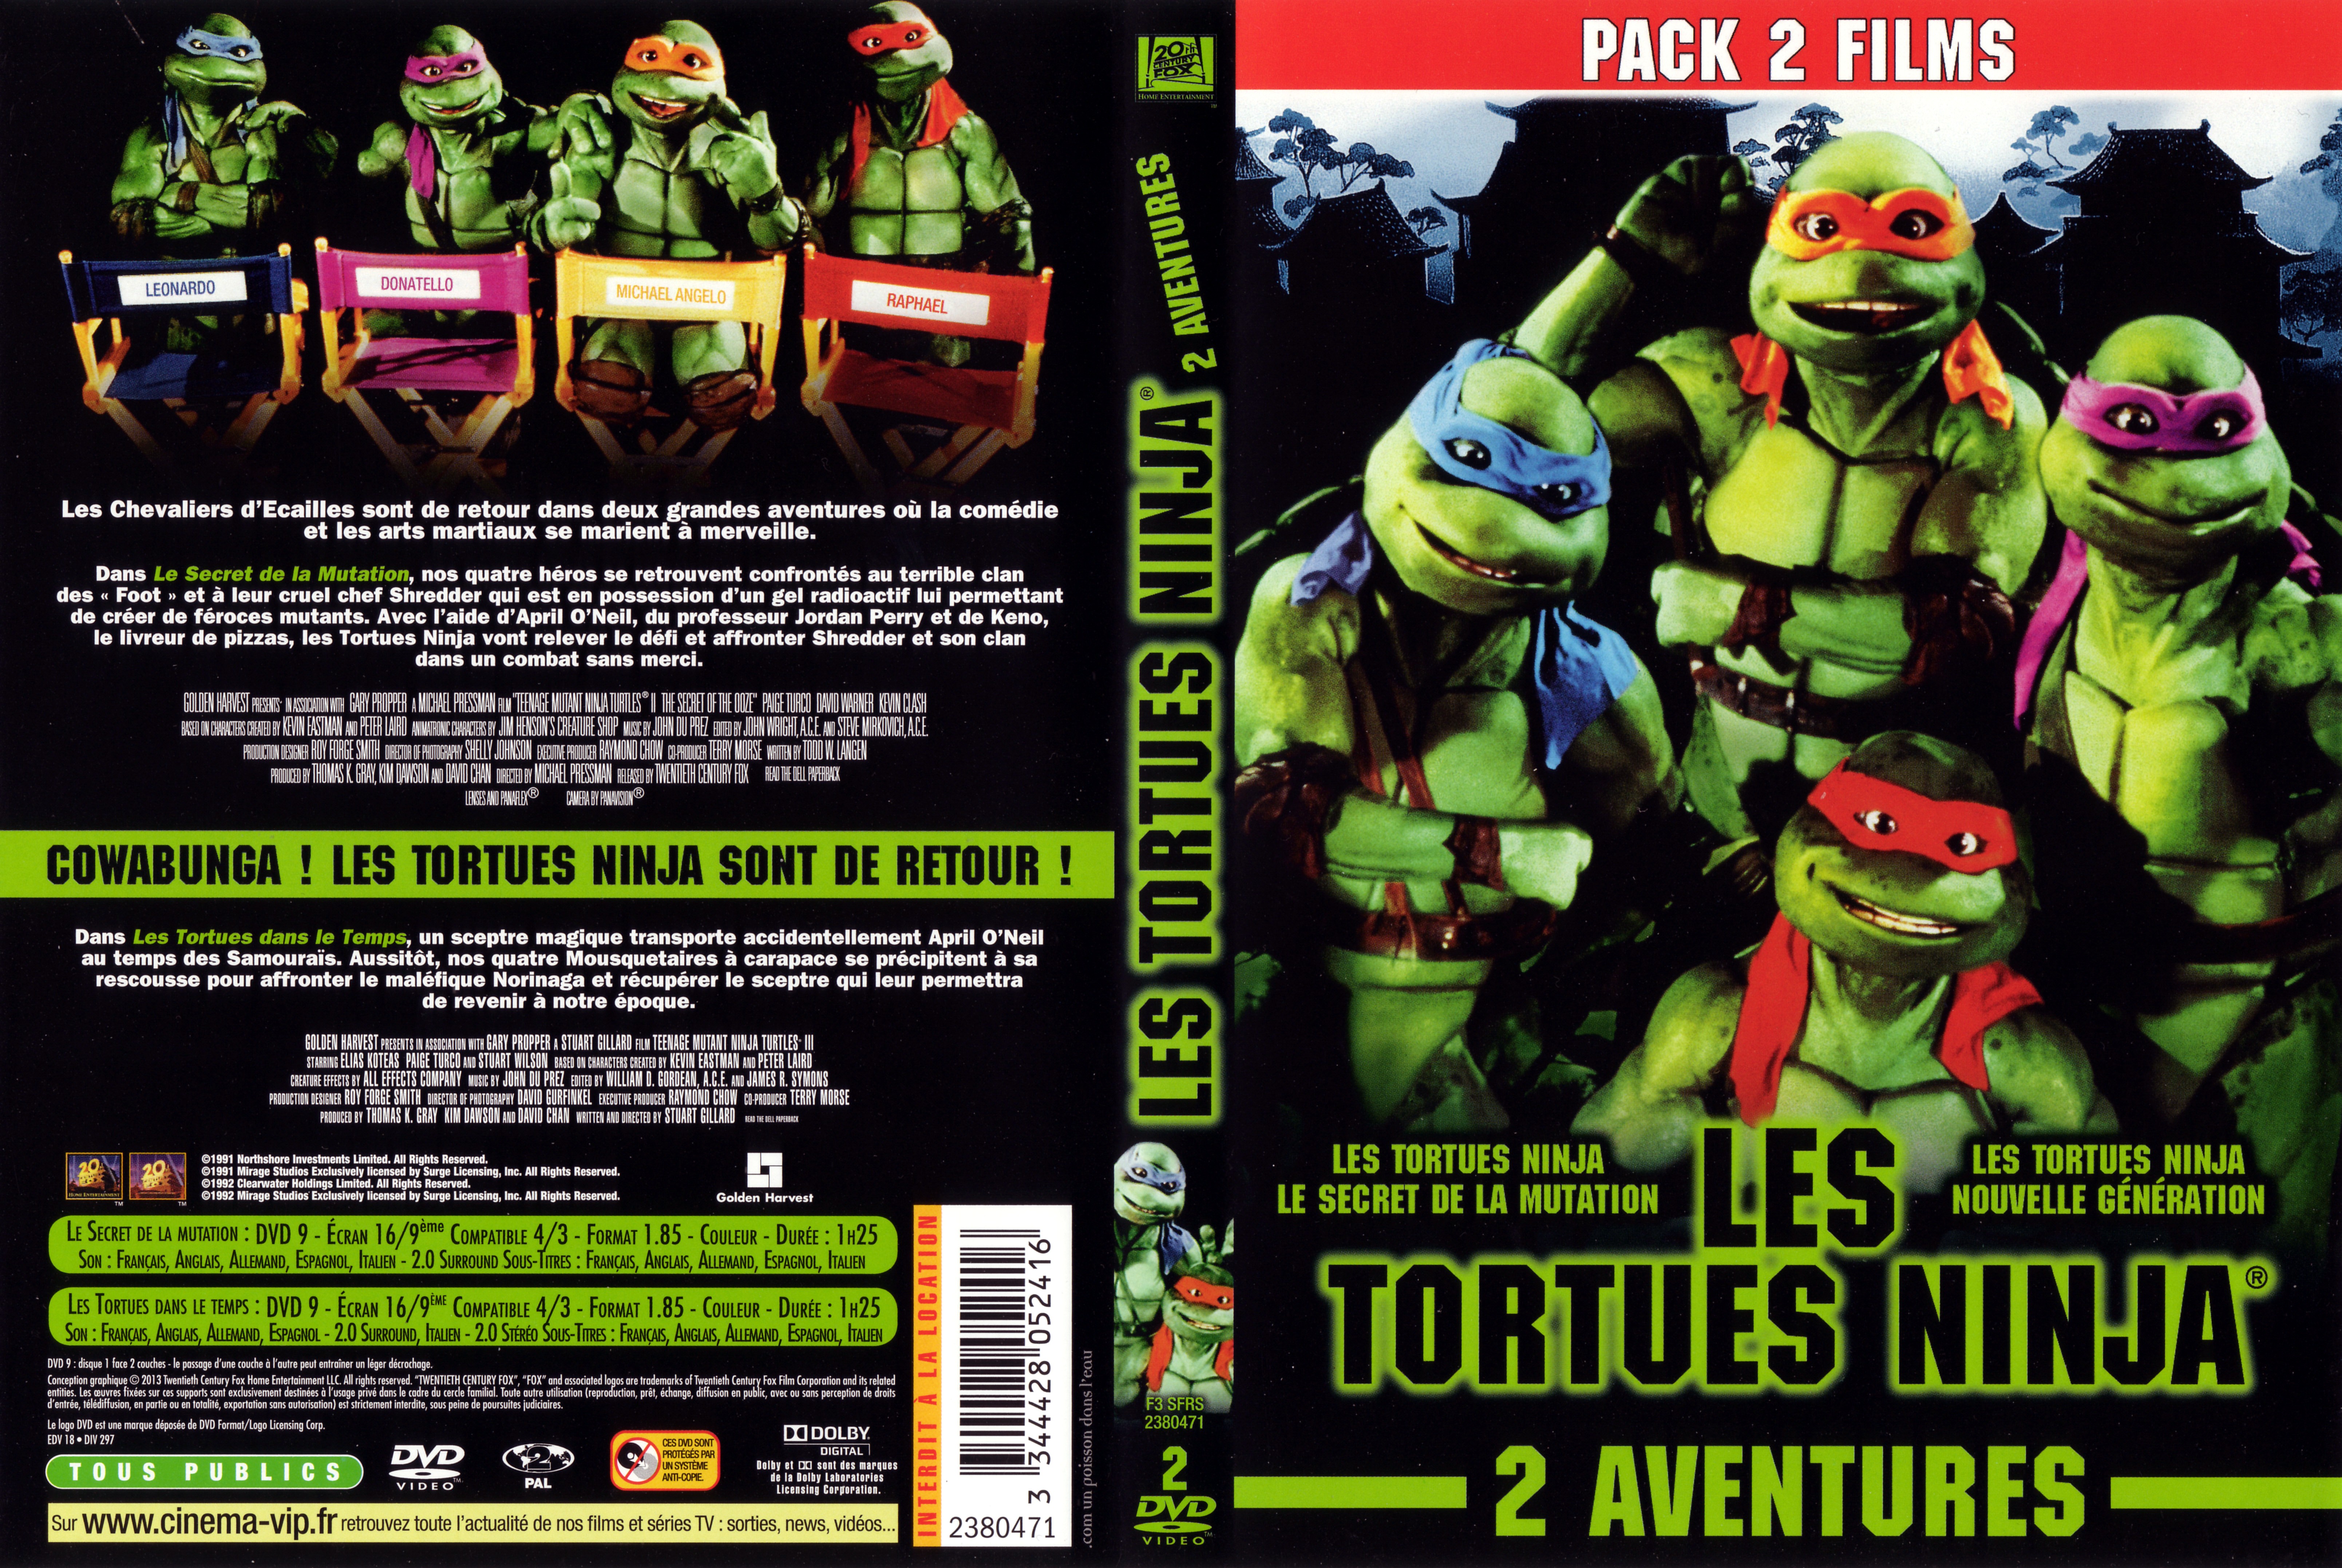 Jaquette DVD Les Tortues ninja - Le secret de la mutation + Les Tortues ninja 3 - Nouvelle generation